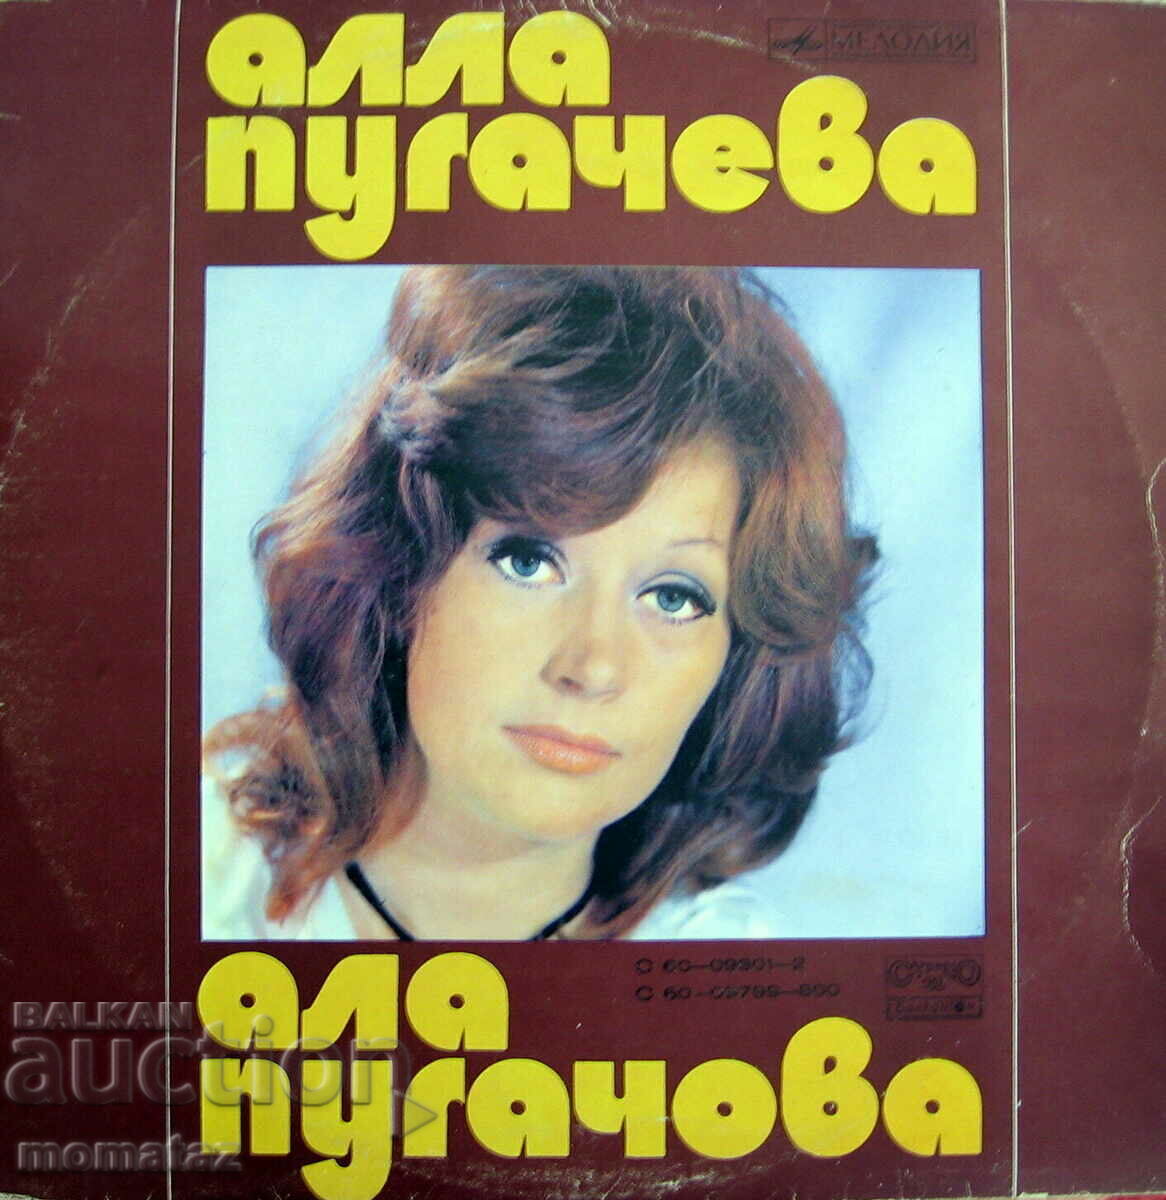 ALLA PUGACHEVA Oglinda de dus 2 LP 12" URSS/Bulgaria